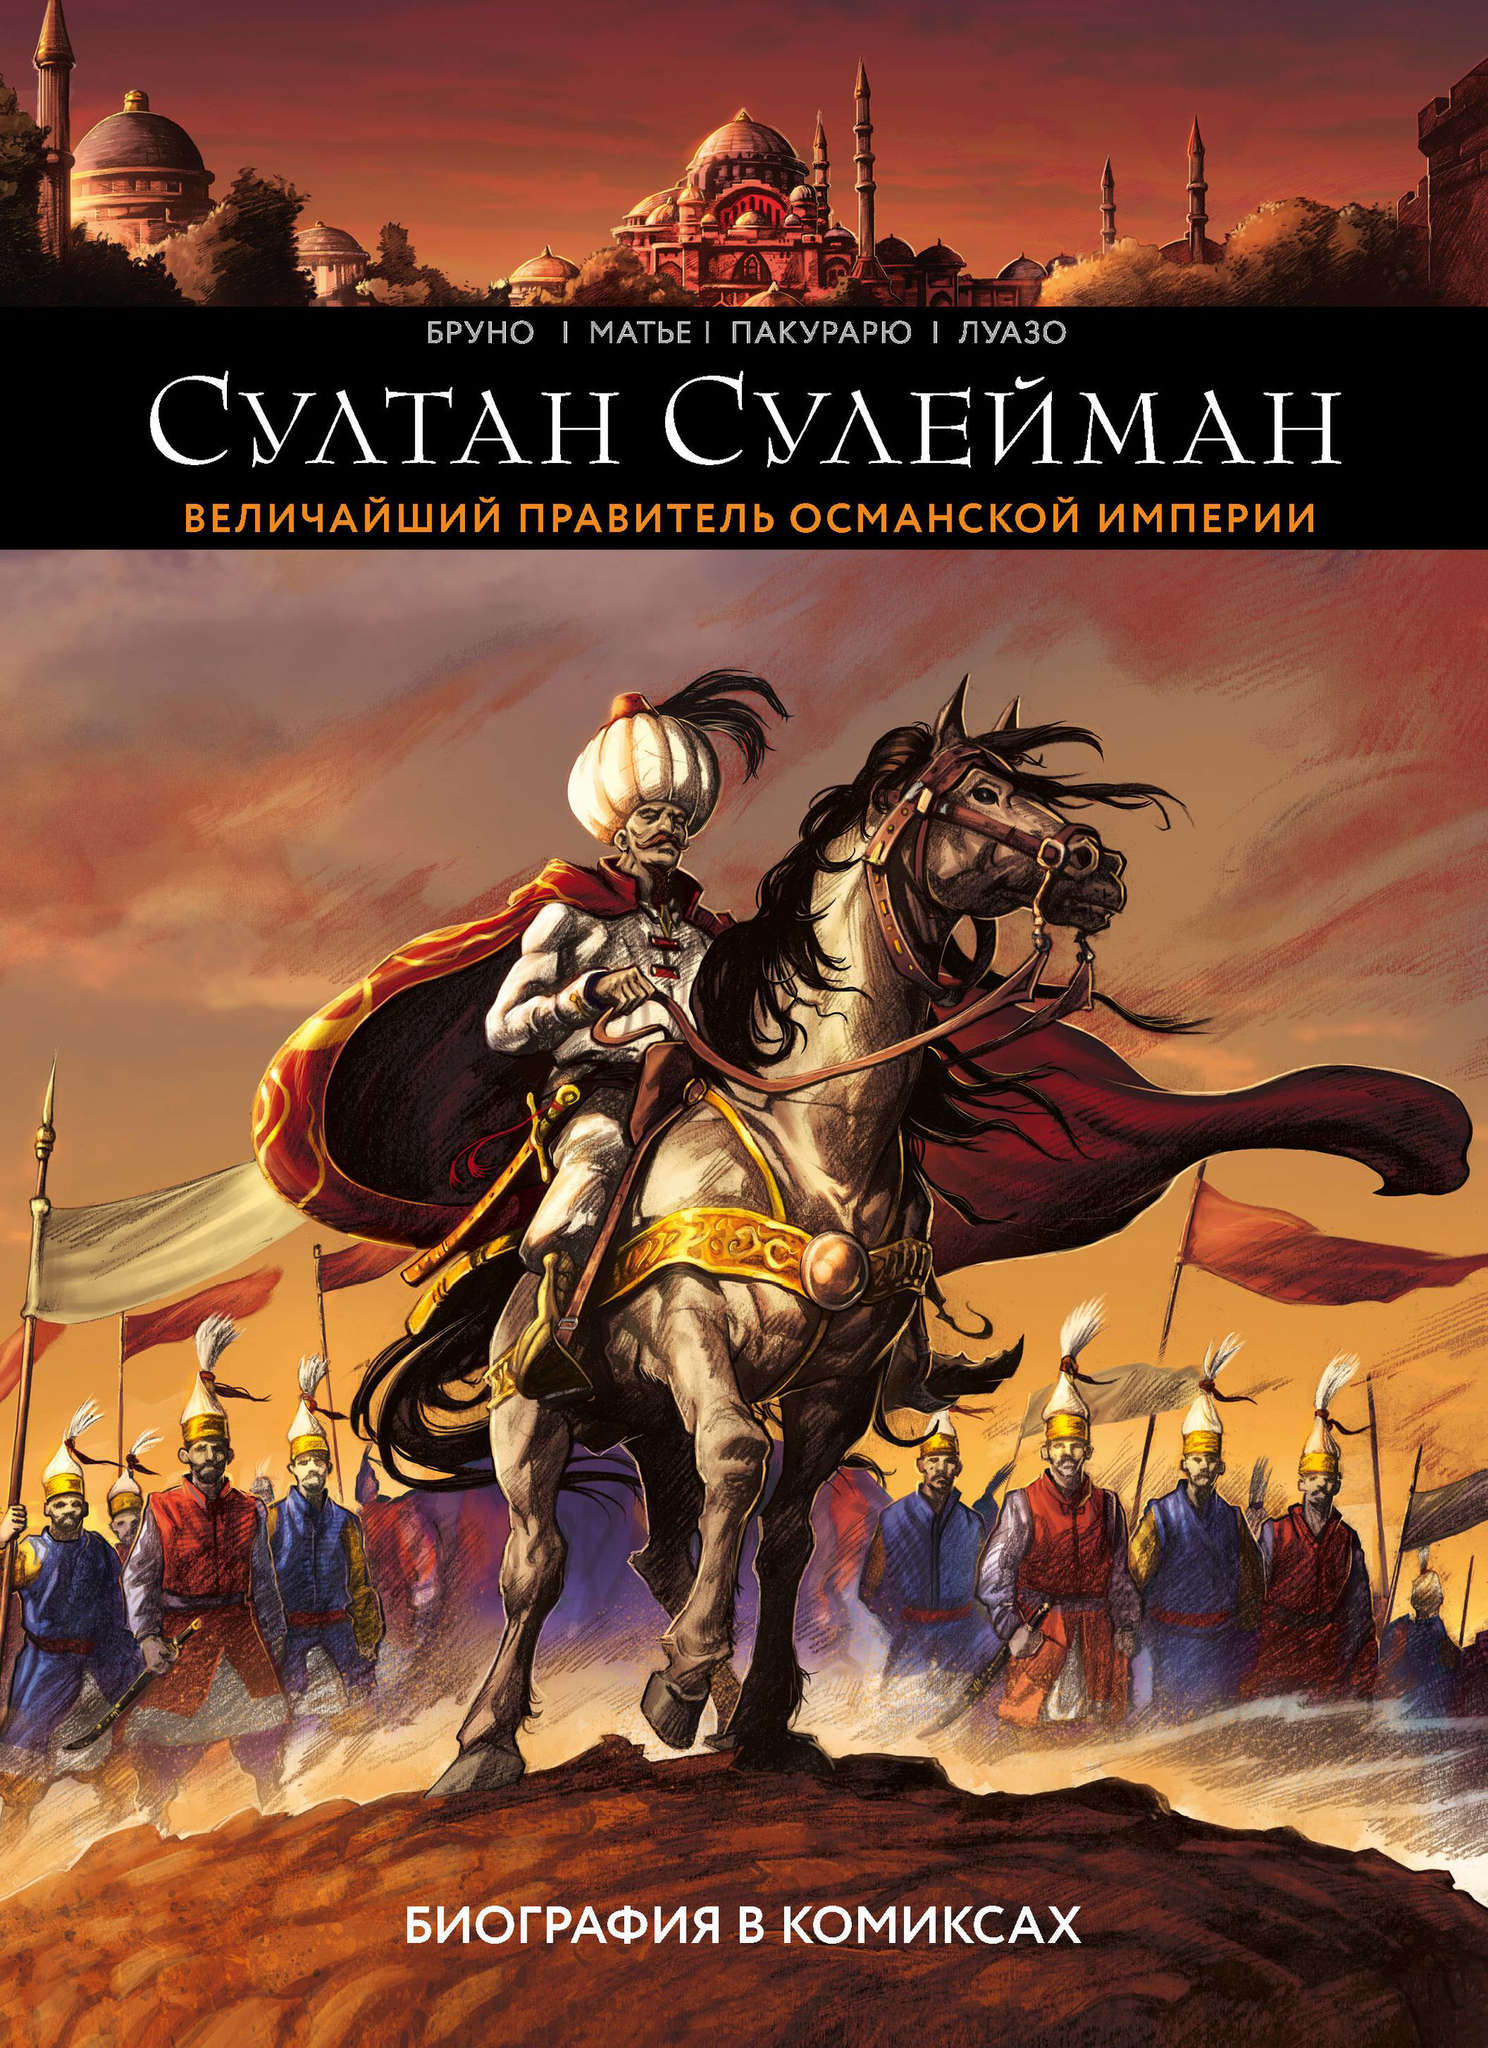 Комикс на русском языке «Султан Сулейман. Биография в комиксах»